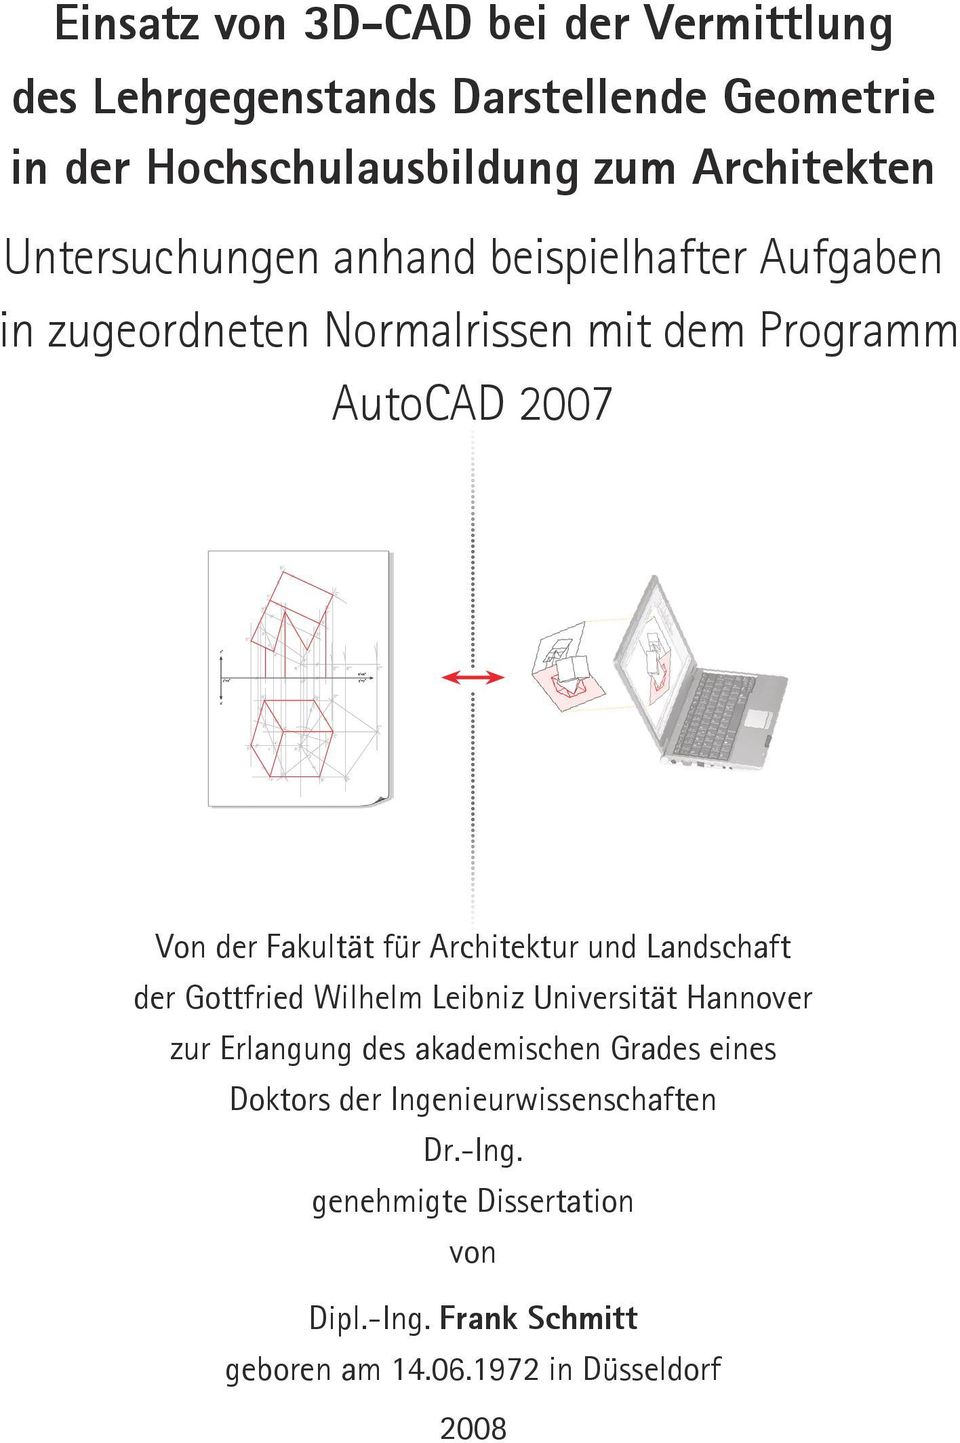 Architektur und Landschaft der Gottfried Wilhelm Leibniz Universität Hannover zur Erlangung des akademischen Grades eines